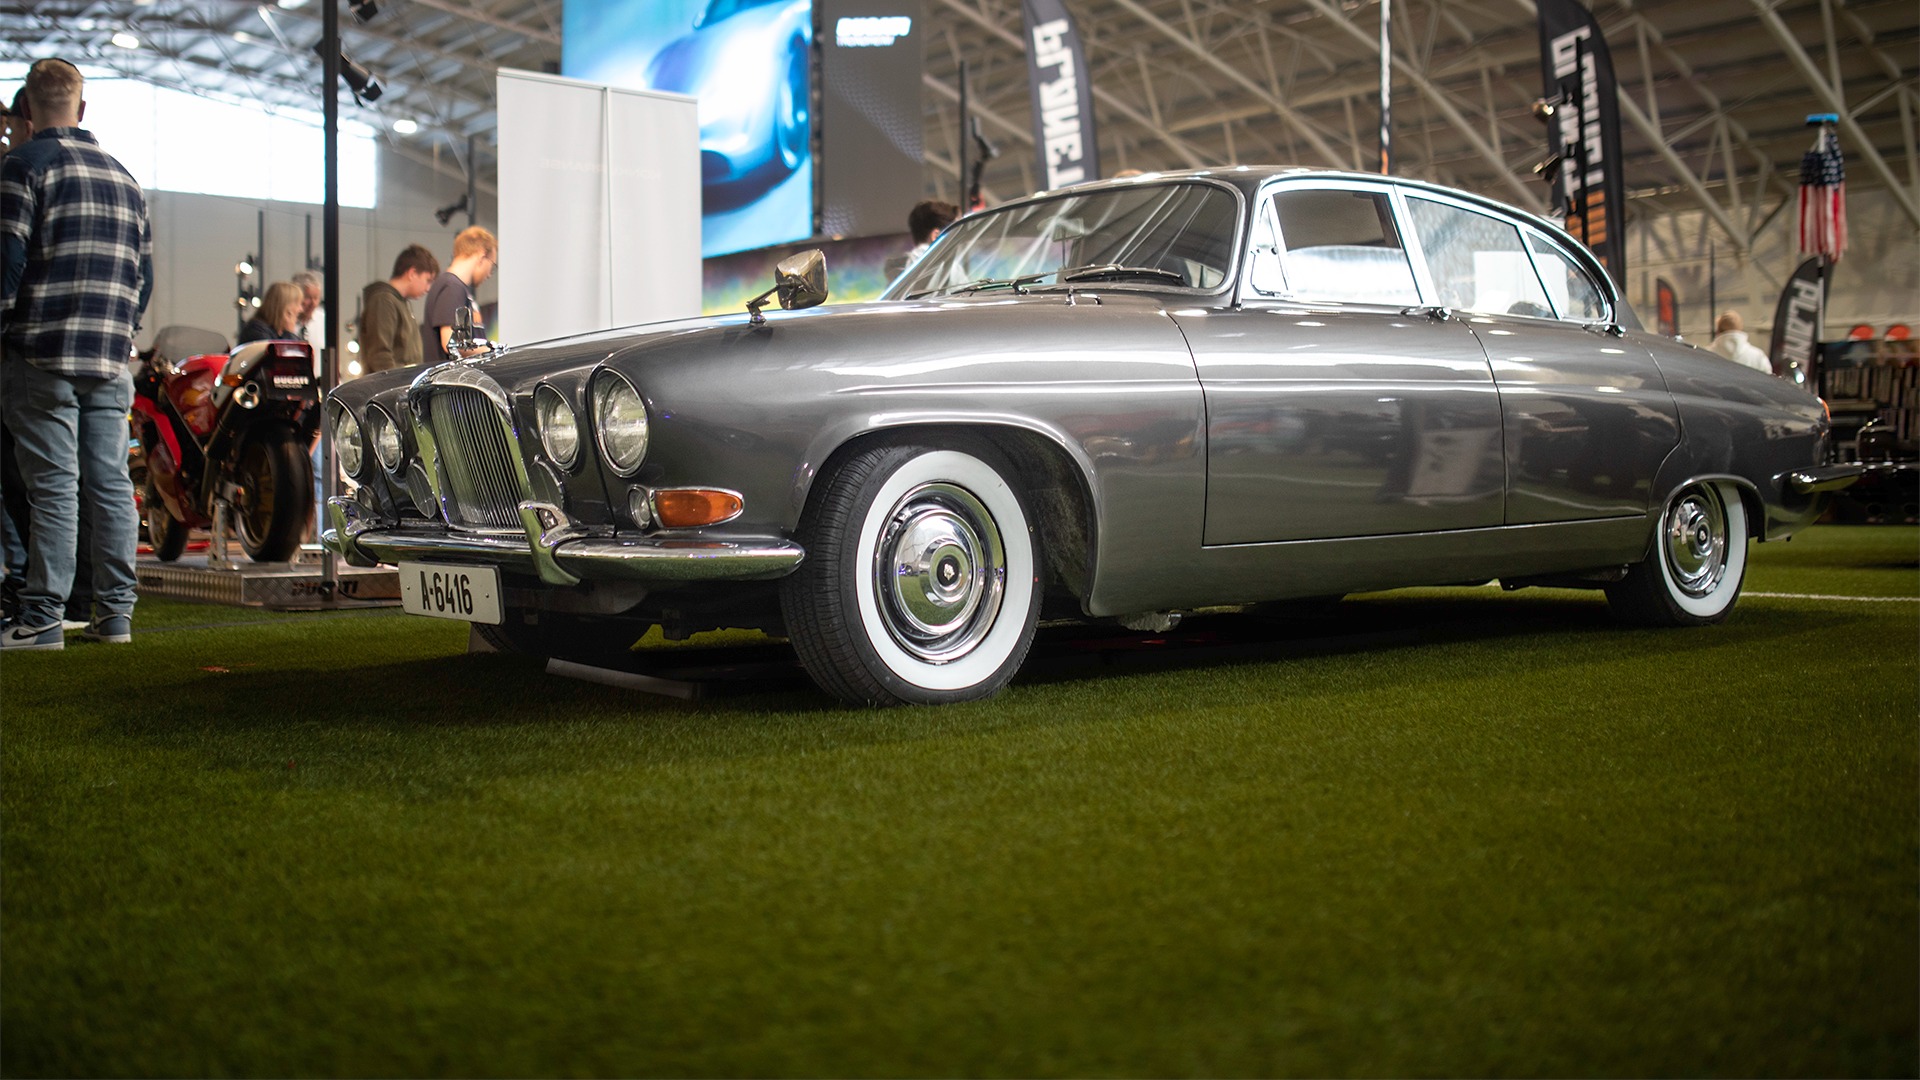 Jaguarene var oppstilt på ra og rekke også i år. Den vakreste av dem var kanskje denne 1962-modellen.